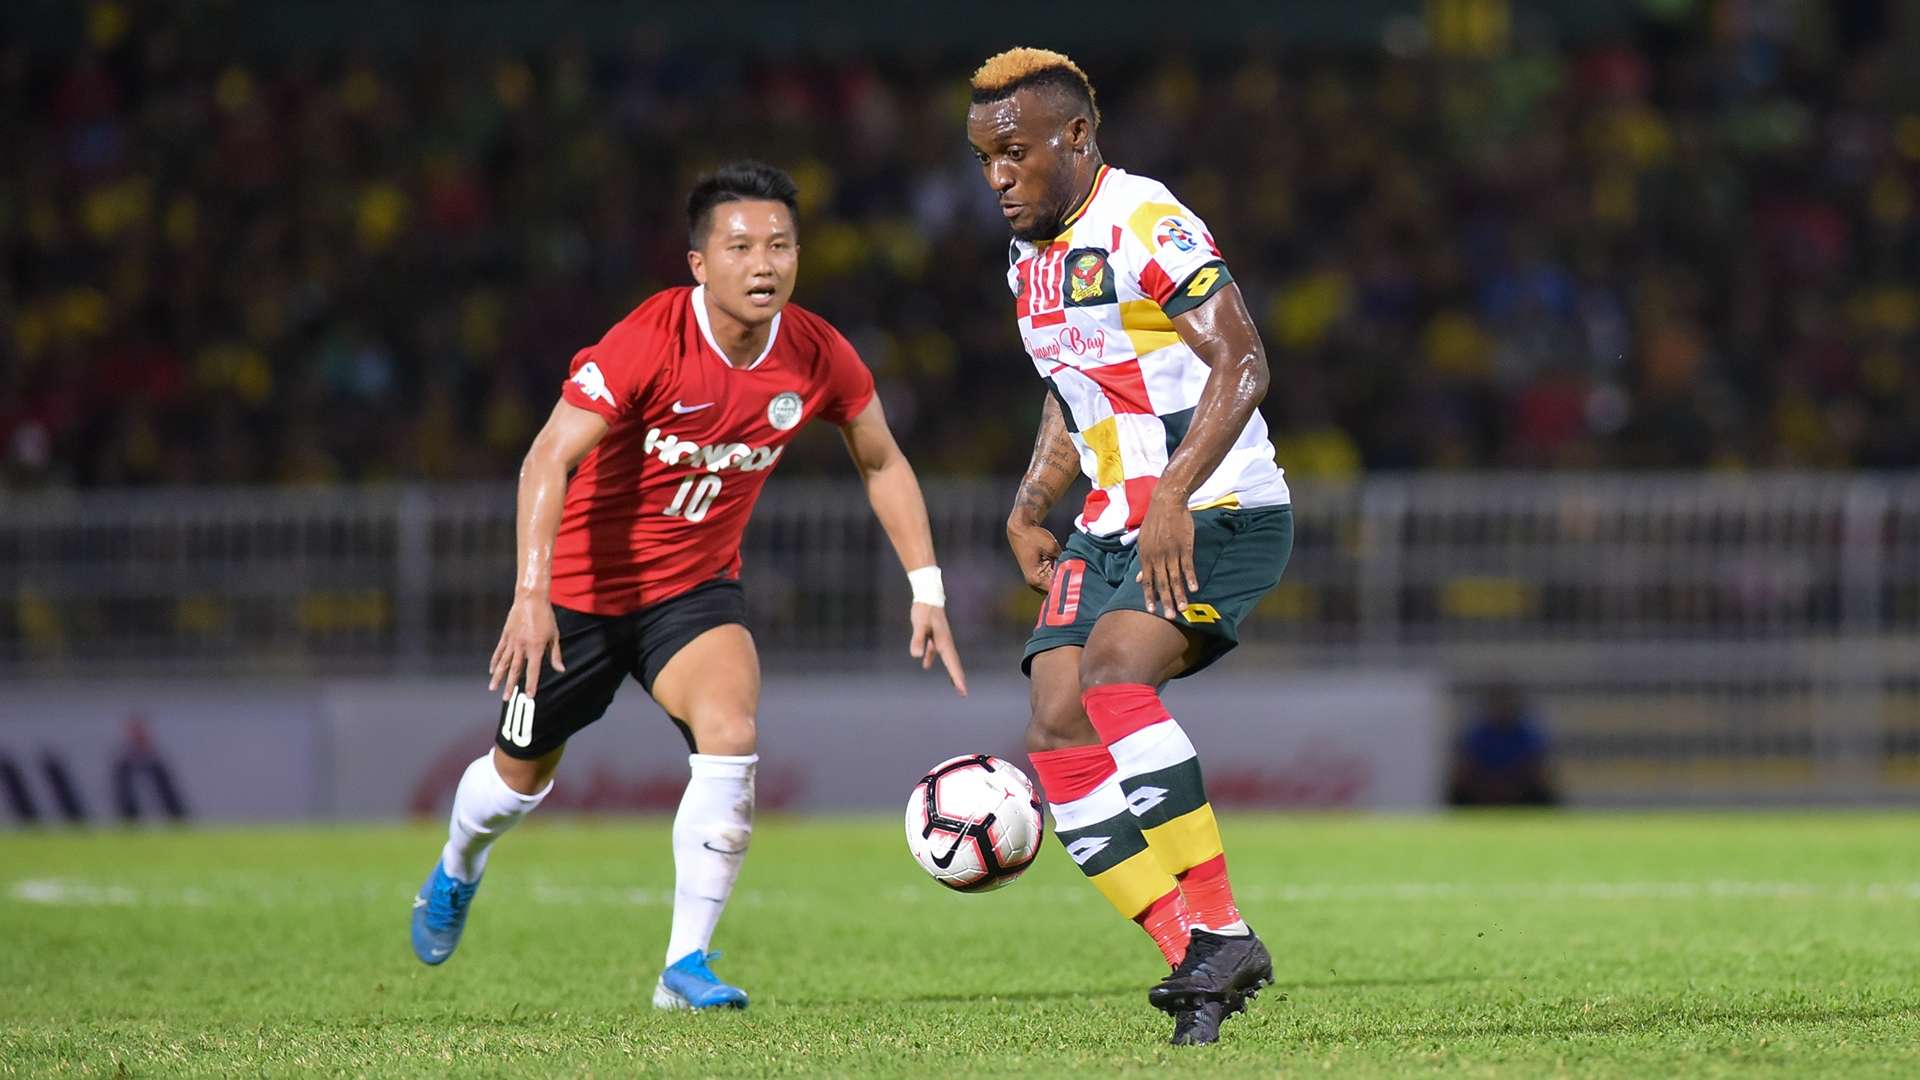 Tchetche Kipre, Kedah v Tai Po, AFC Champions League qualifier, 21 Jan 2019